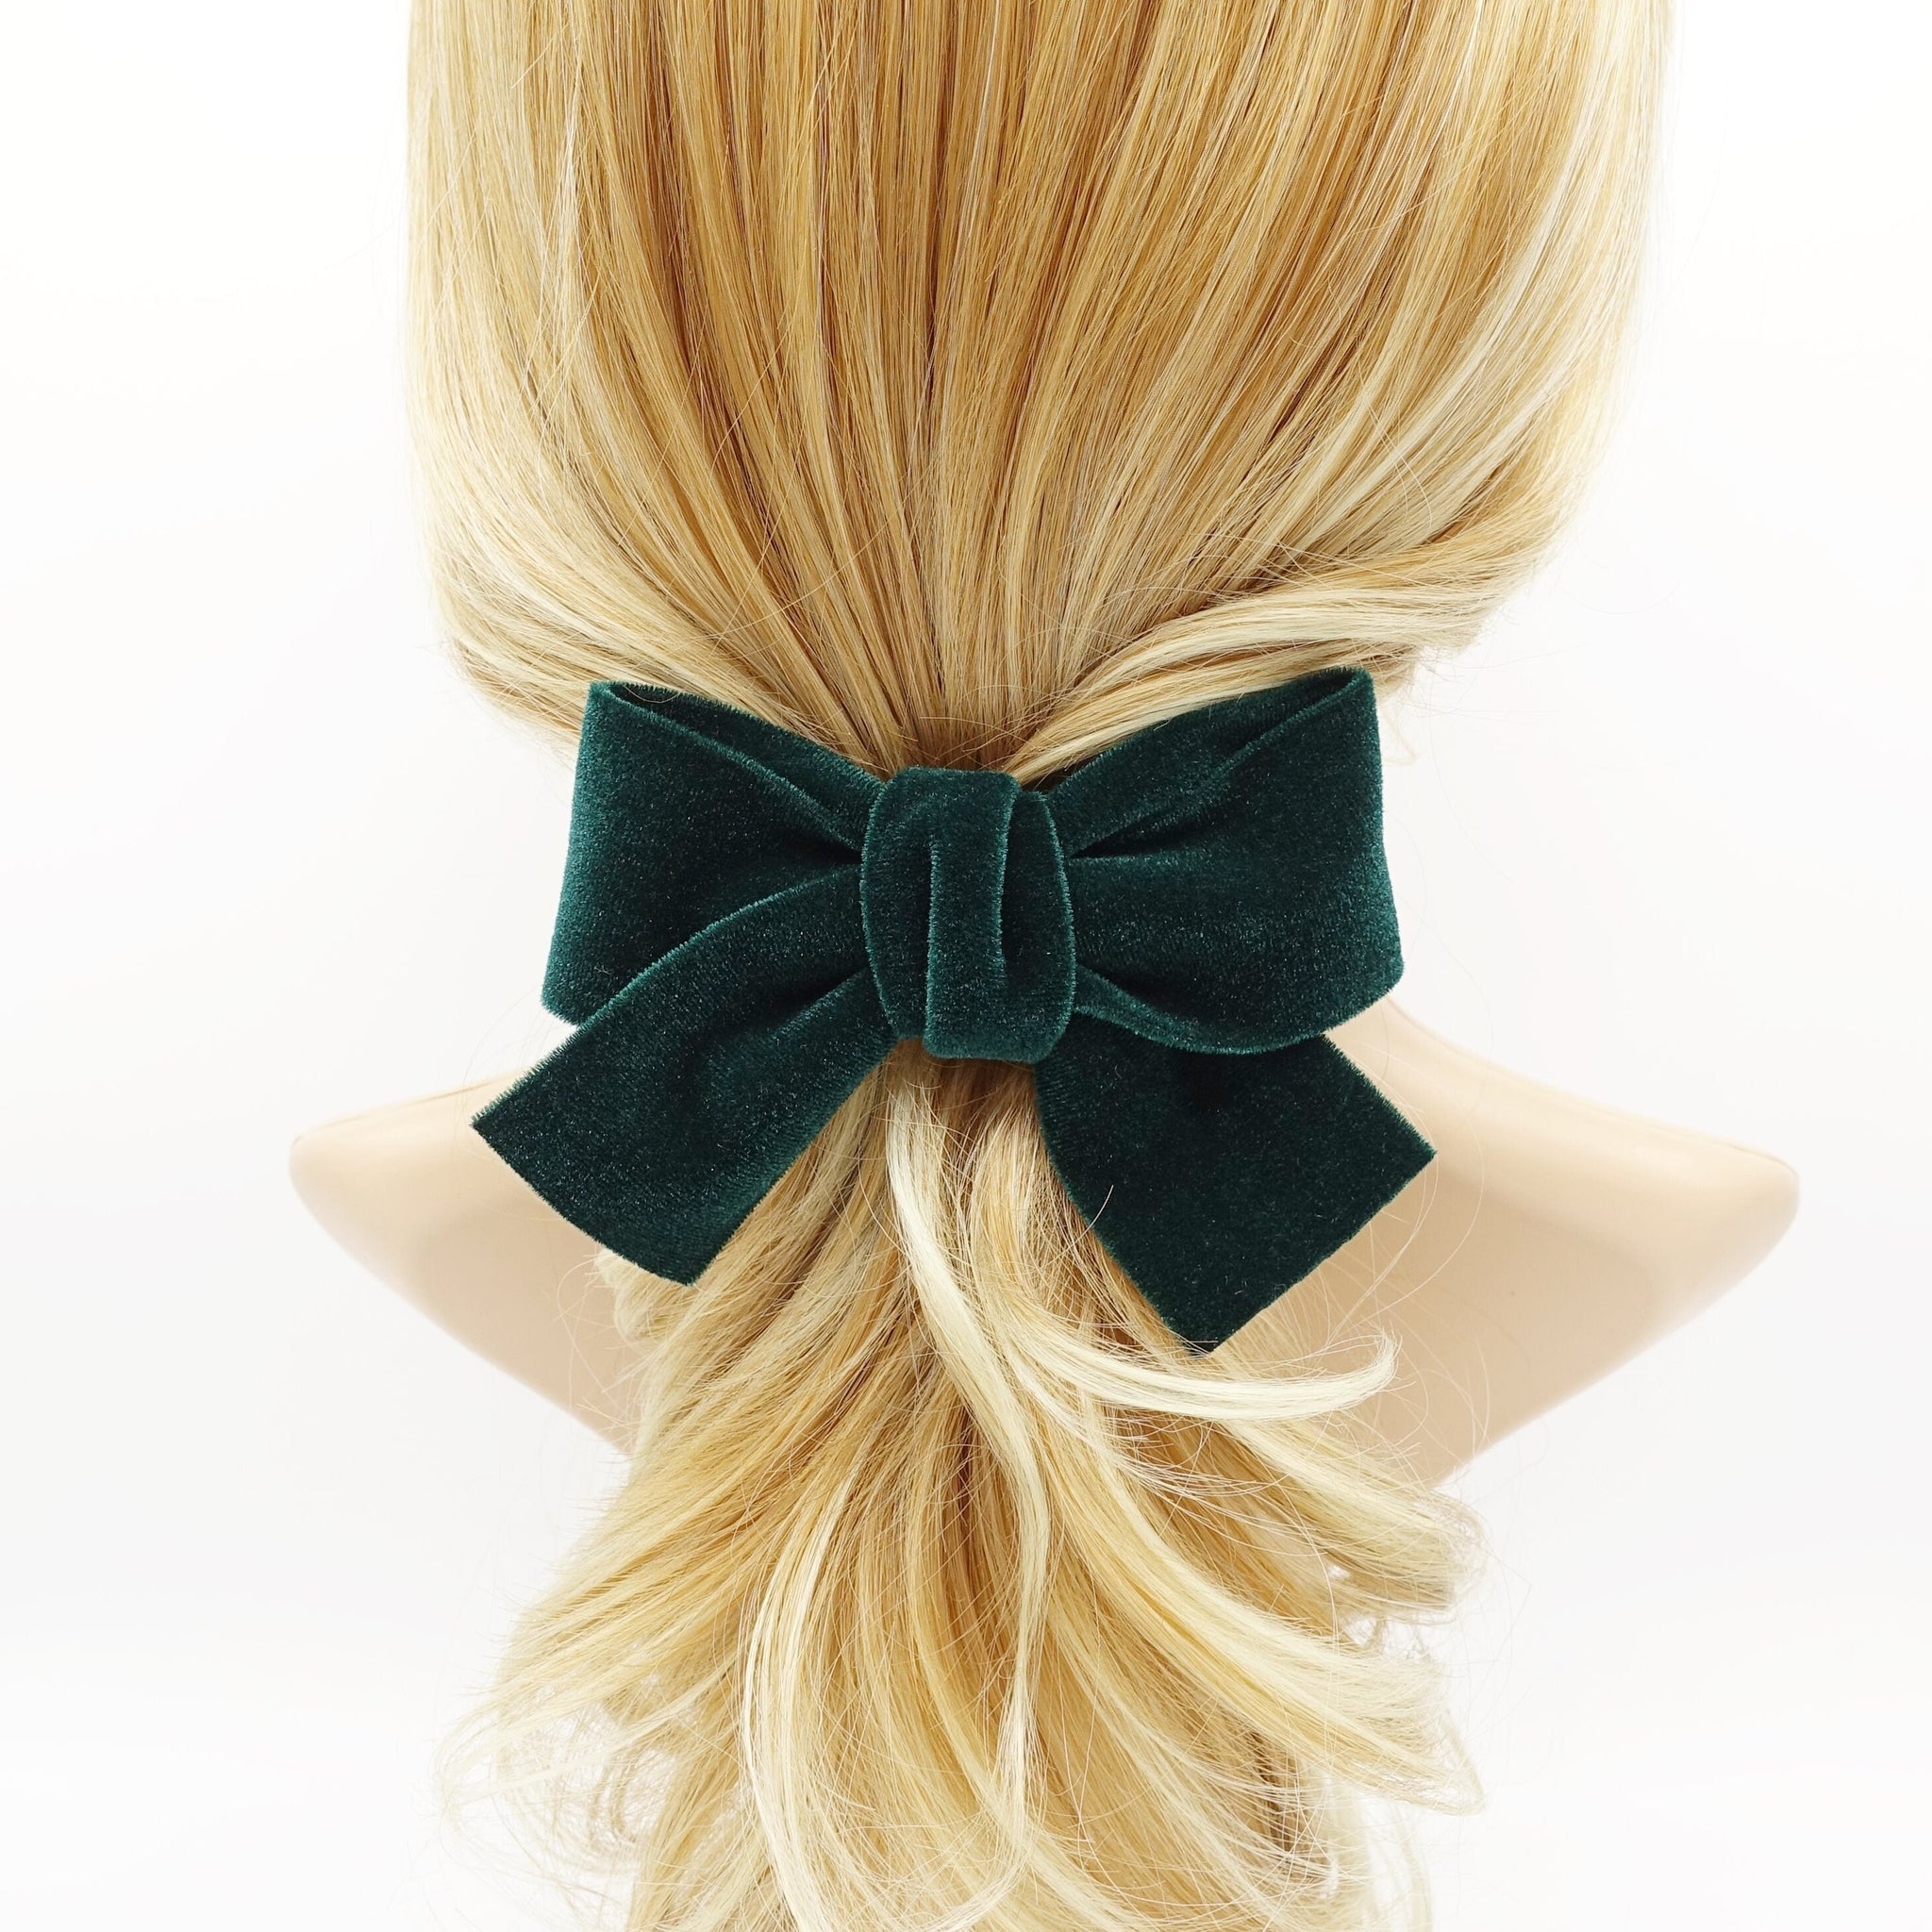 veryshine.com Barrette (Bow) Green medium velvet cross bow french barrette basic Fall Winter hair accessory